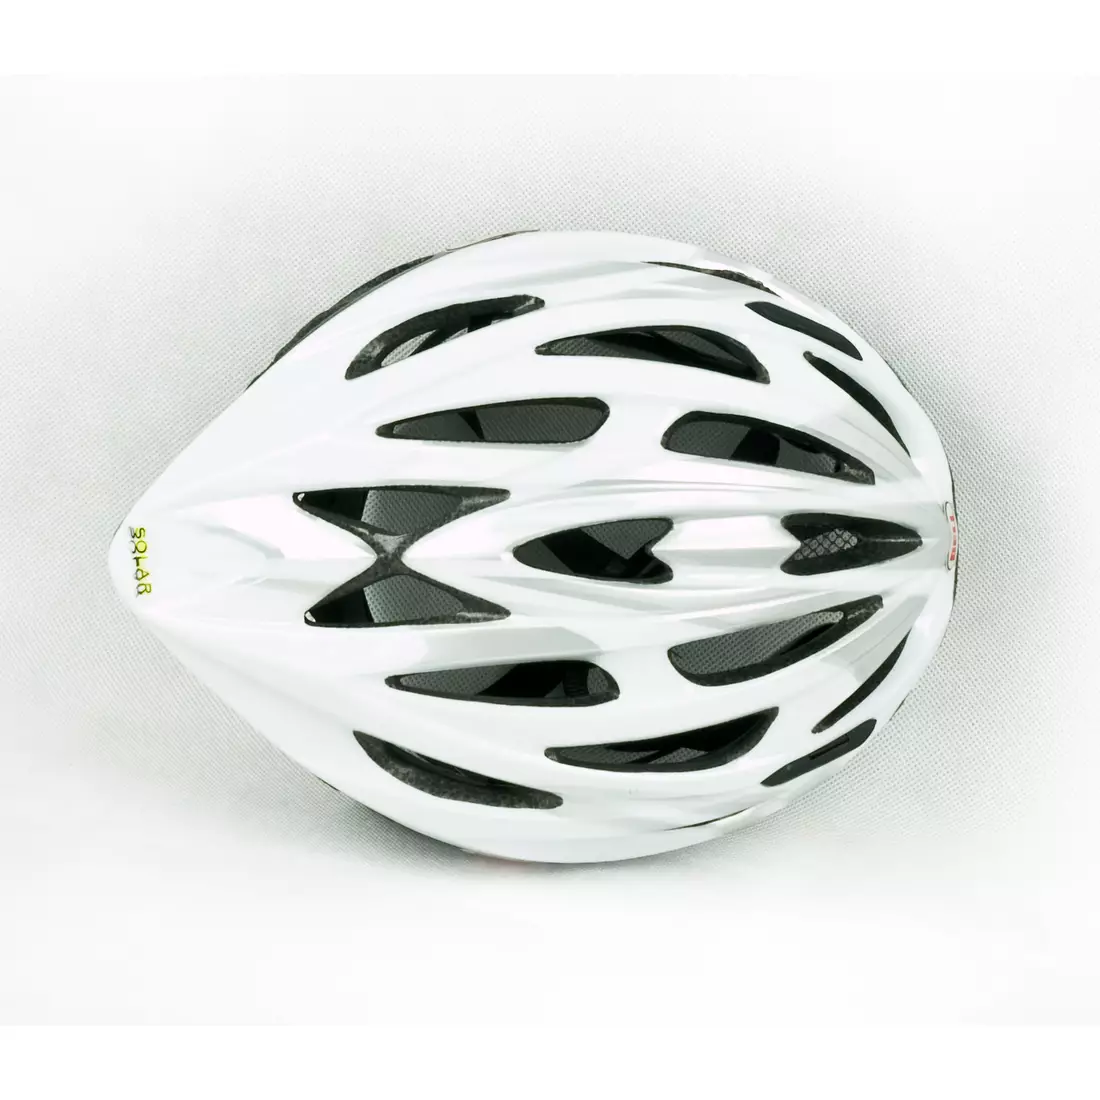 BELL SOLAR - casca de bicicleta, alb si argintiu blast